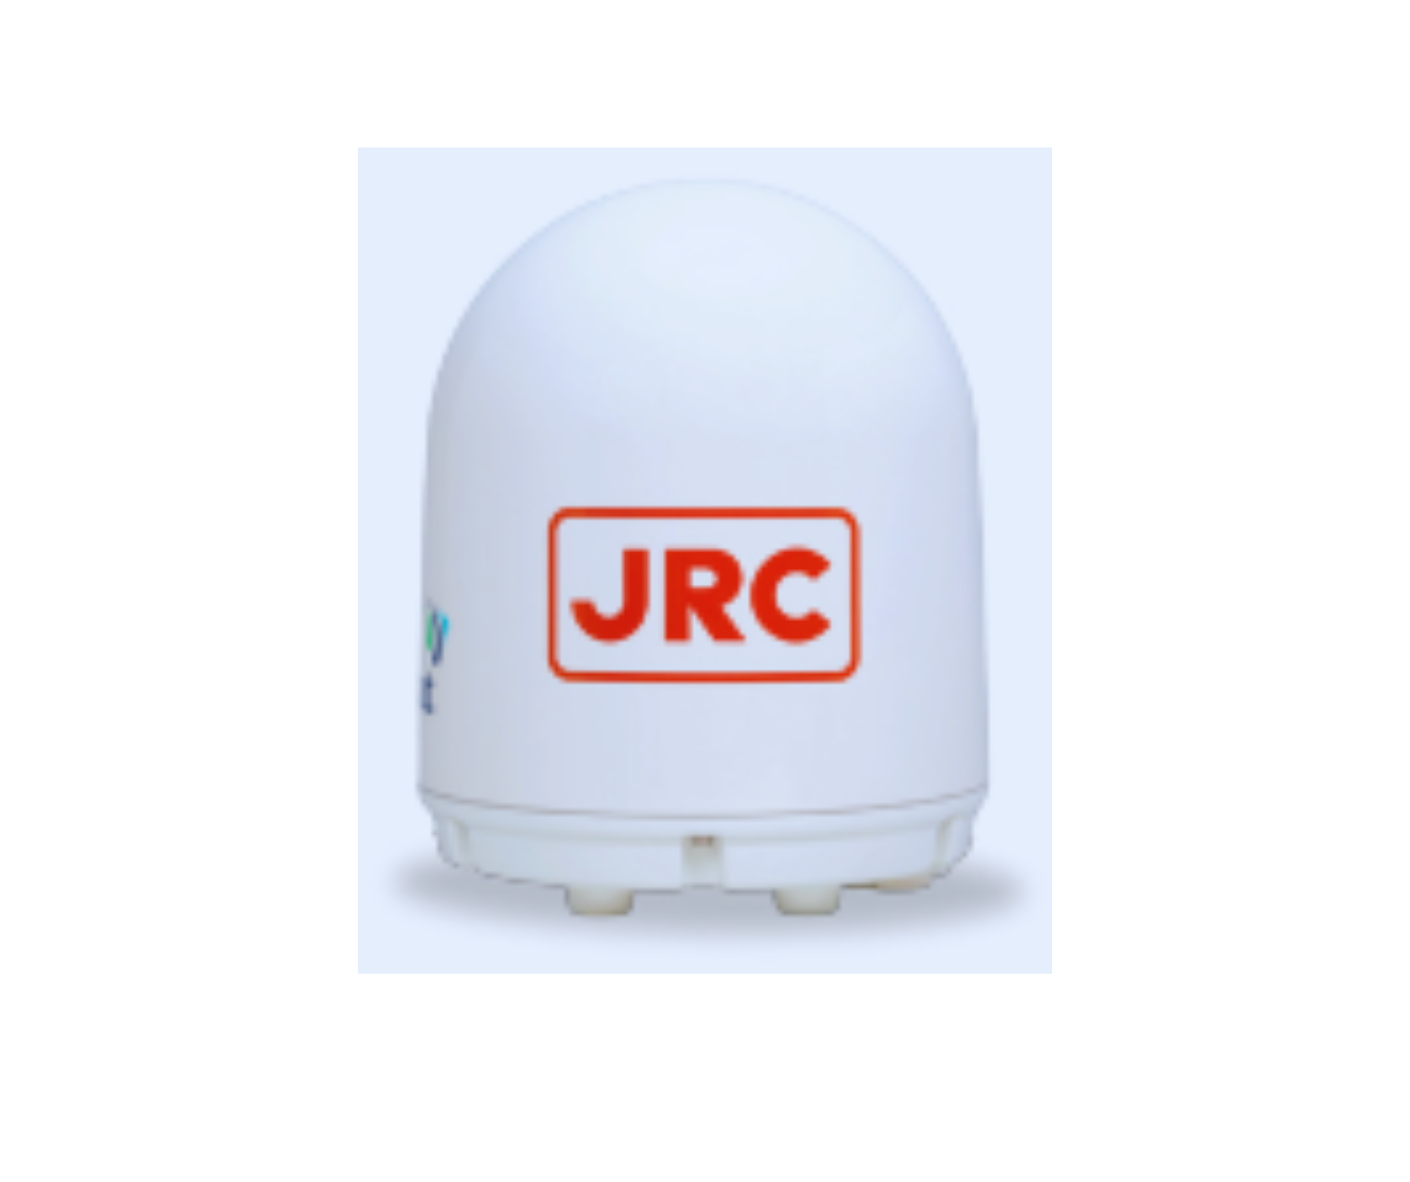 Antenna for GSC-251,JRC JUE-251 / JUE-501 Fleet Broadband, JRC Alphatron